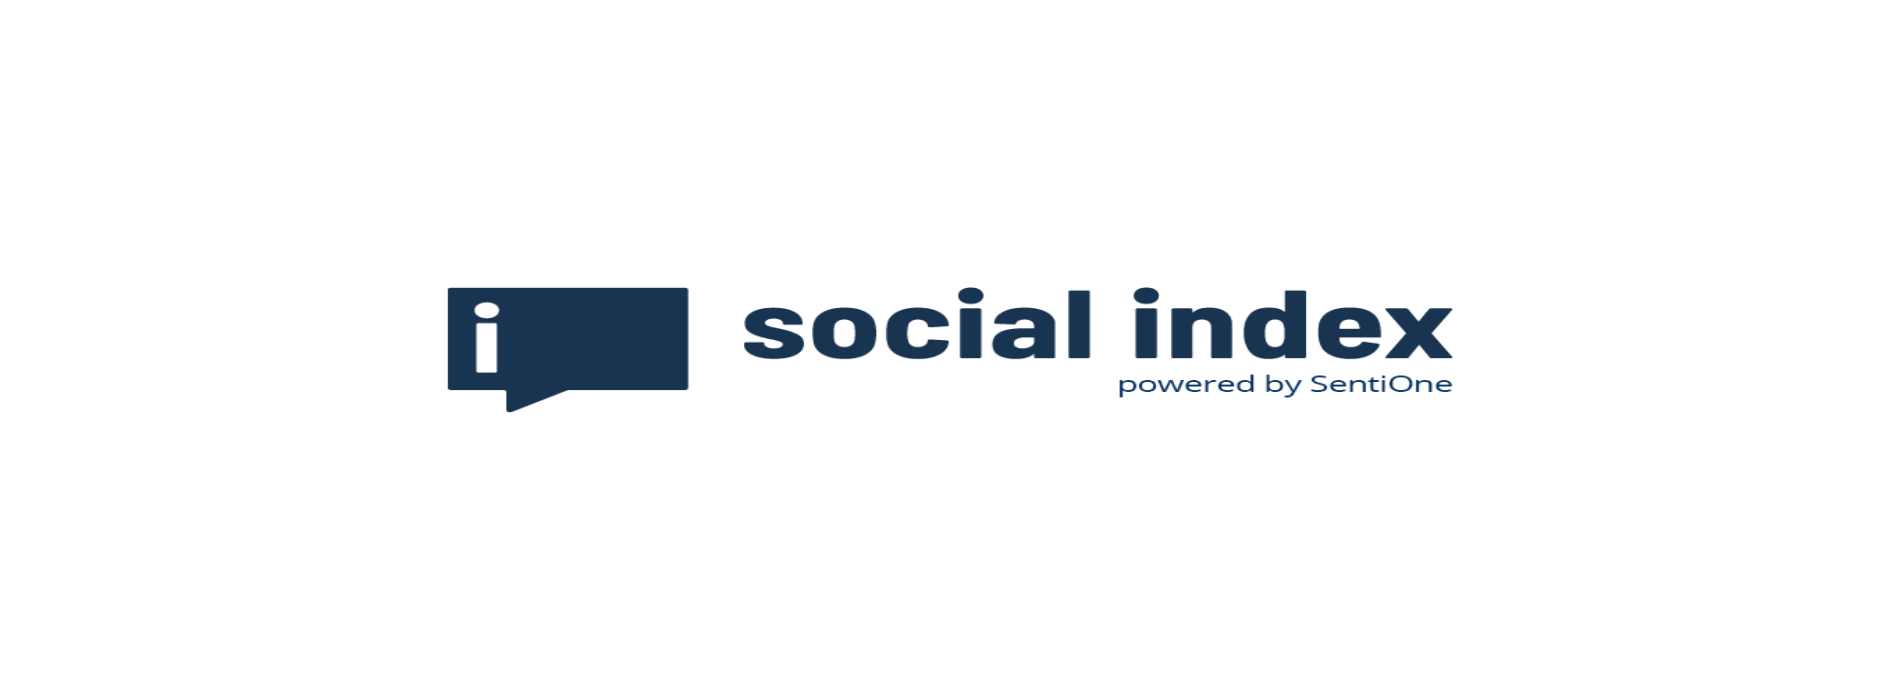 Social Index Report 2017 für Deutschland